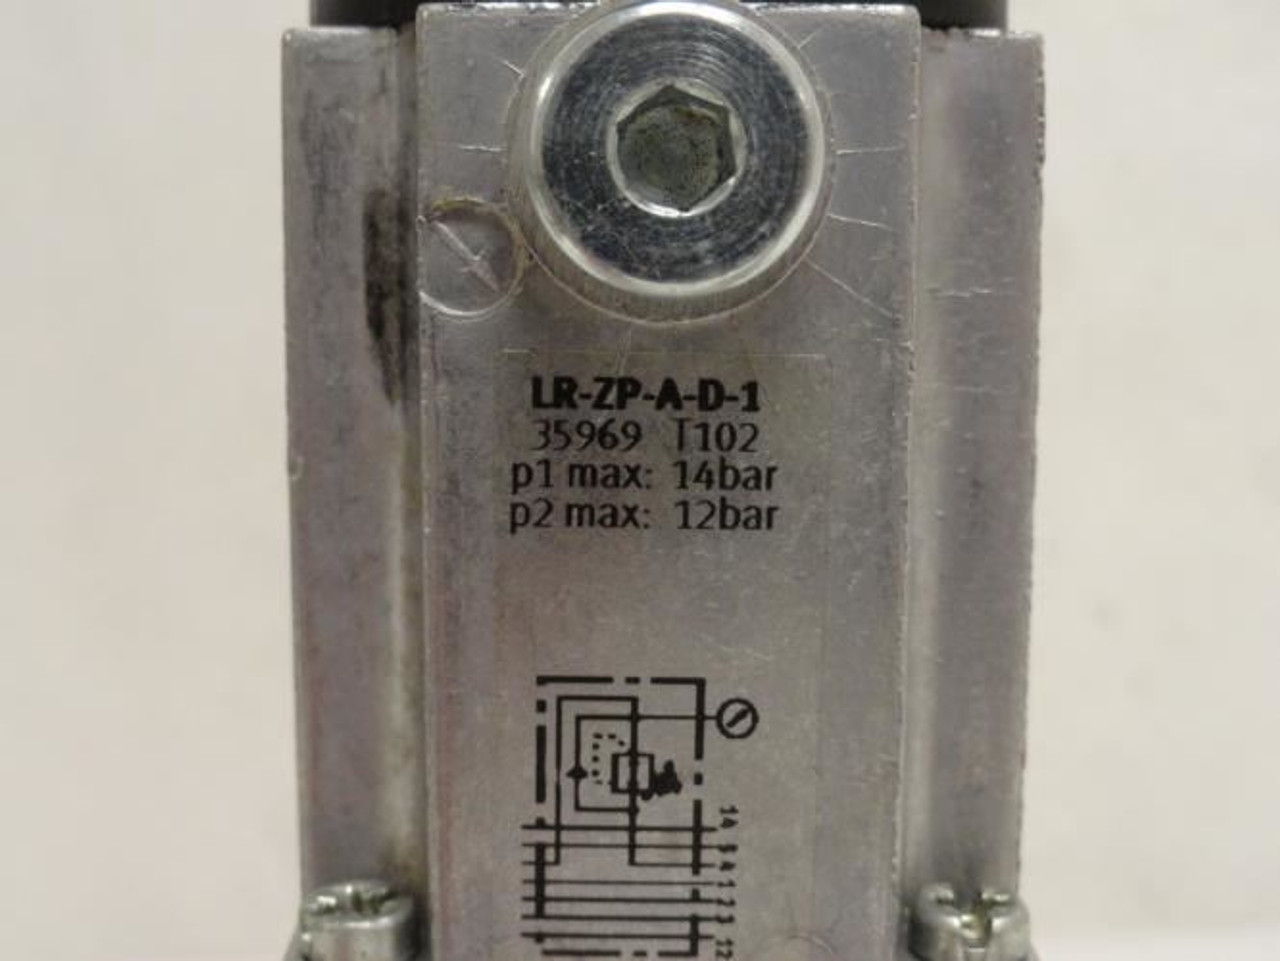 Festo LR-ZP-A-D-1; Intermediate Pressure Regulator Plate; 35969